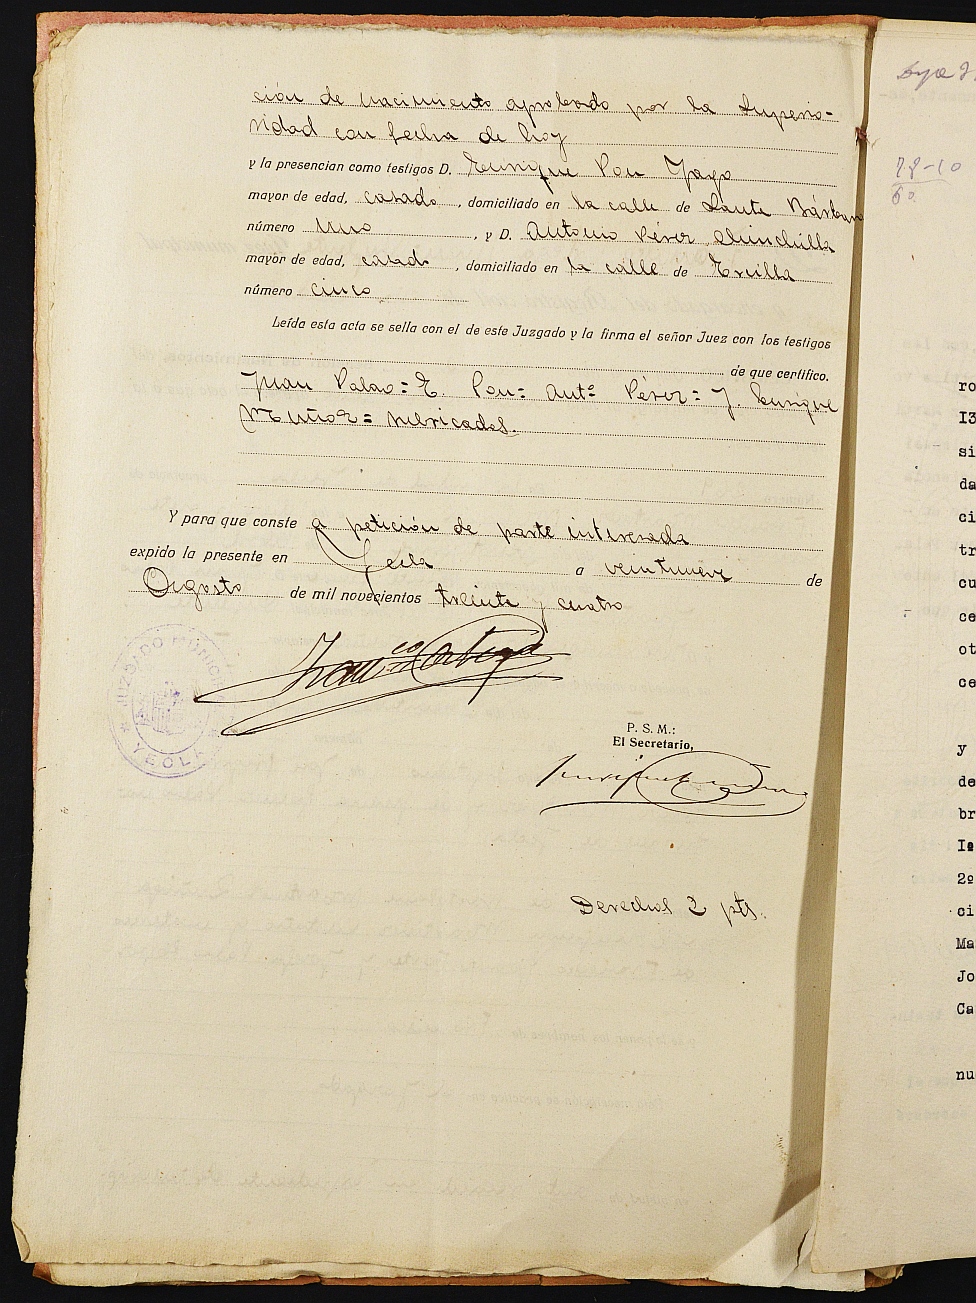 Declaración de herederos 152/1934 del Juzgado de Primera Instancia e Instrucción Nº 1 de Yecla, por defunción de Juana Gómez Palao.